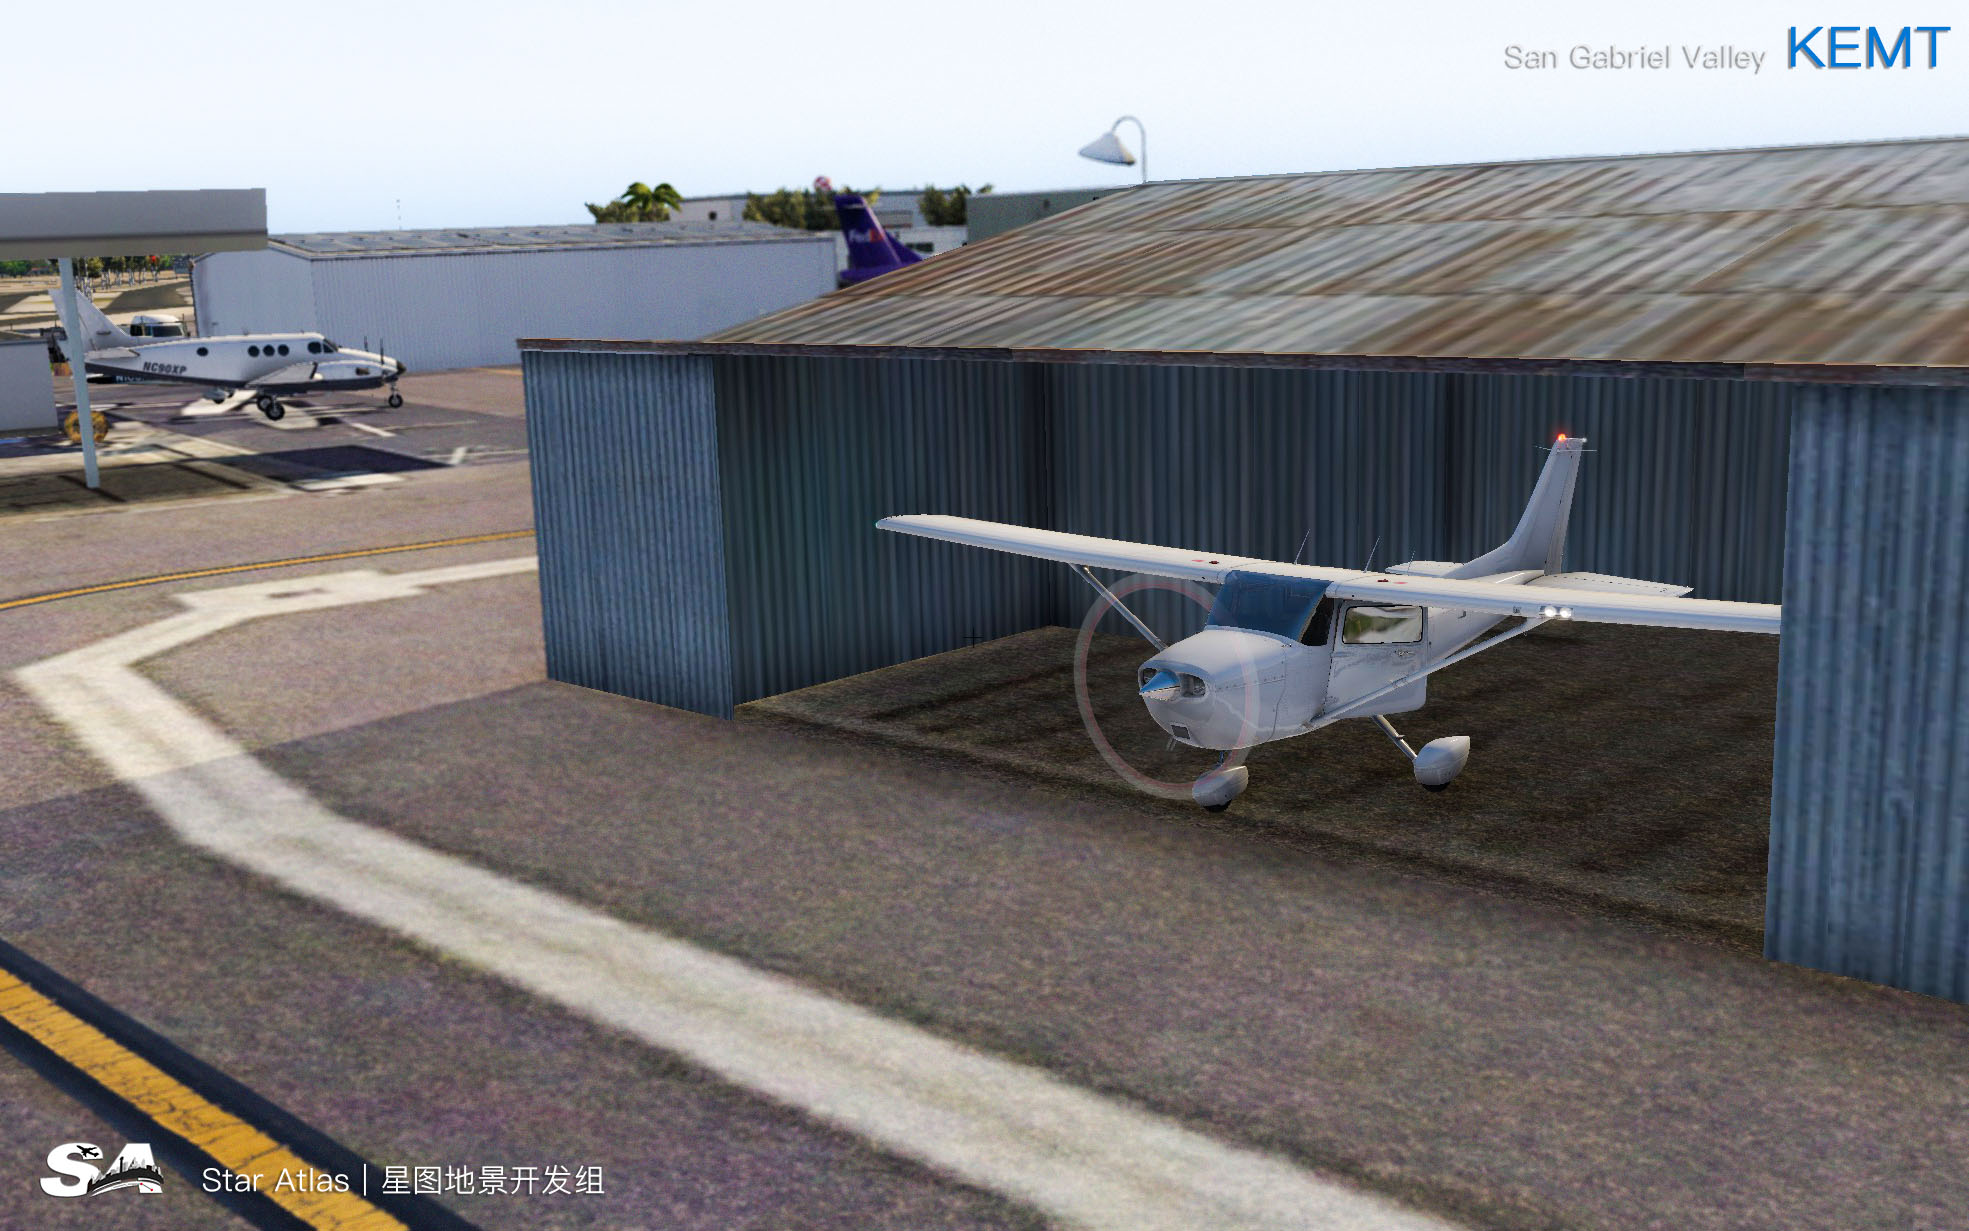 【X-Plane】KEMT-圣盖博谷机场 HD 1.0-3607 